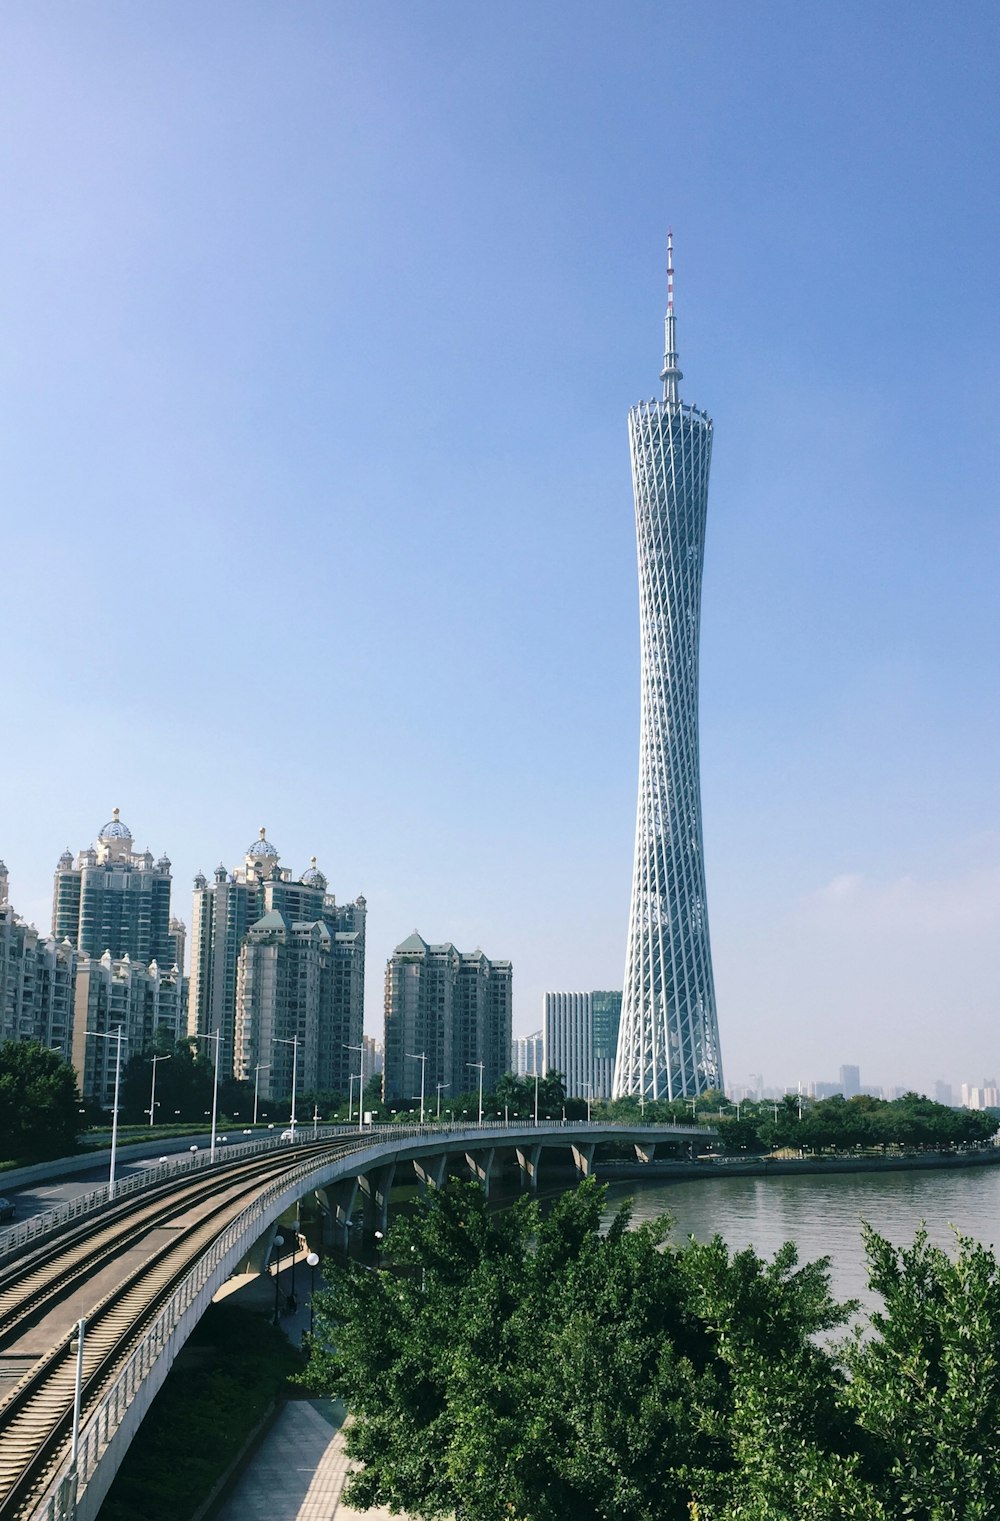 Una torre molto alta che domina una città vicino a un fiume